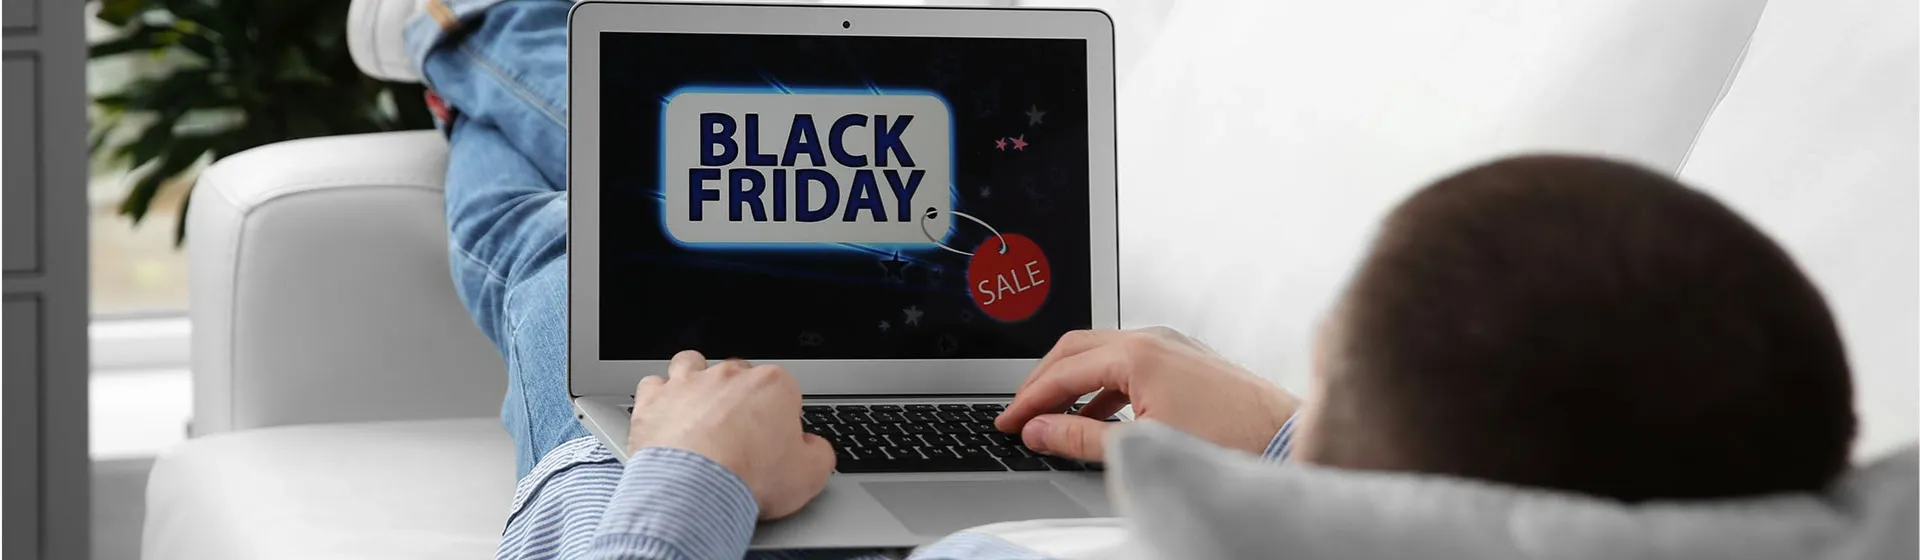 Homem deitado no sofá segurando um notebook com a tela mostrando "Black Friday"